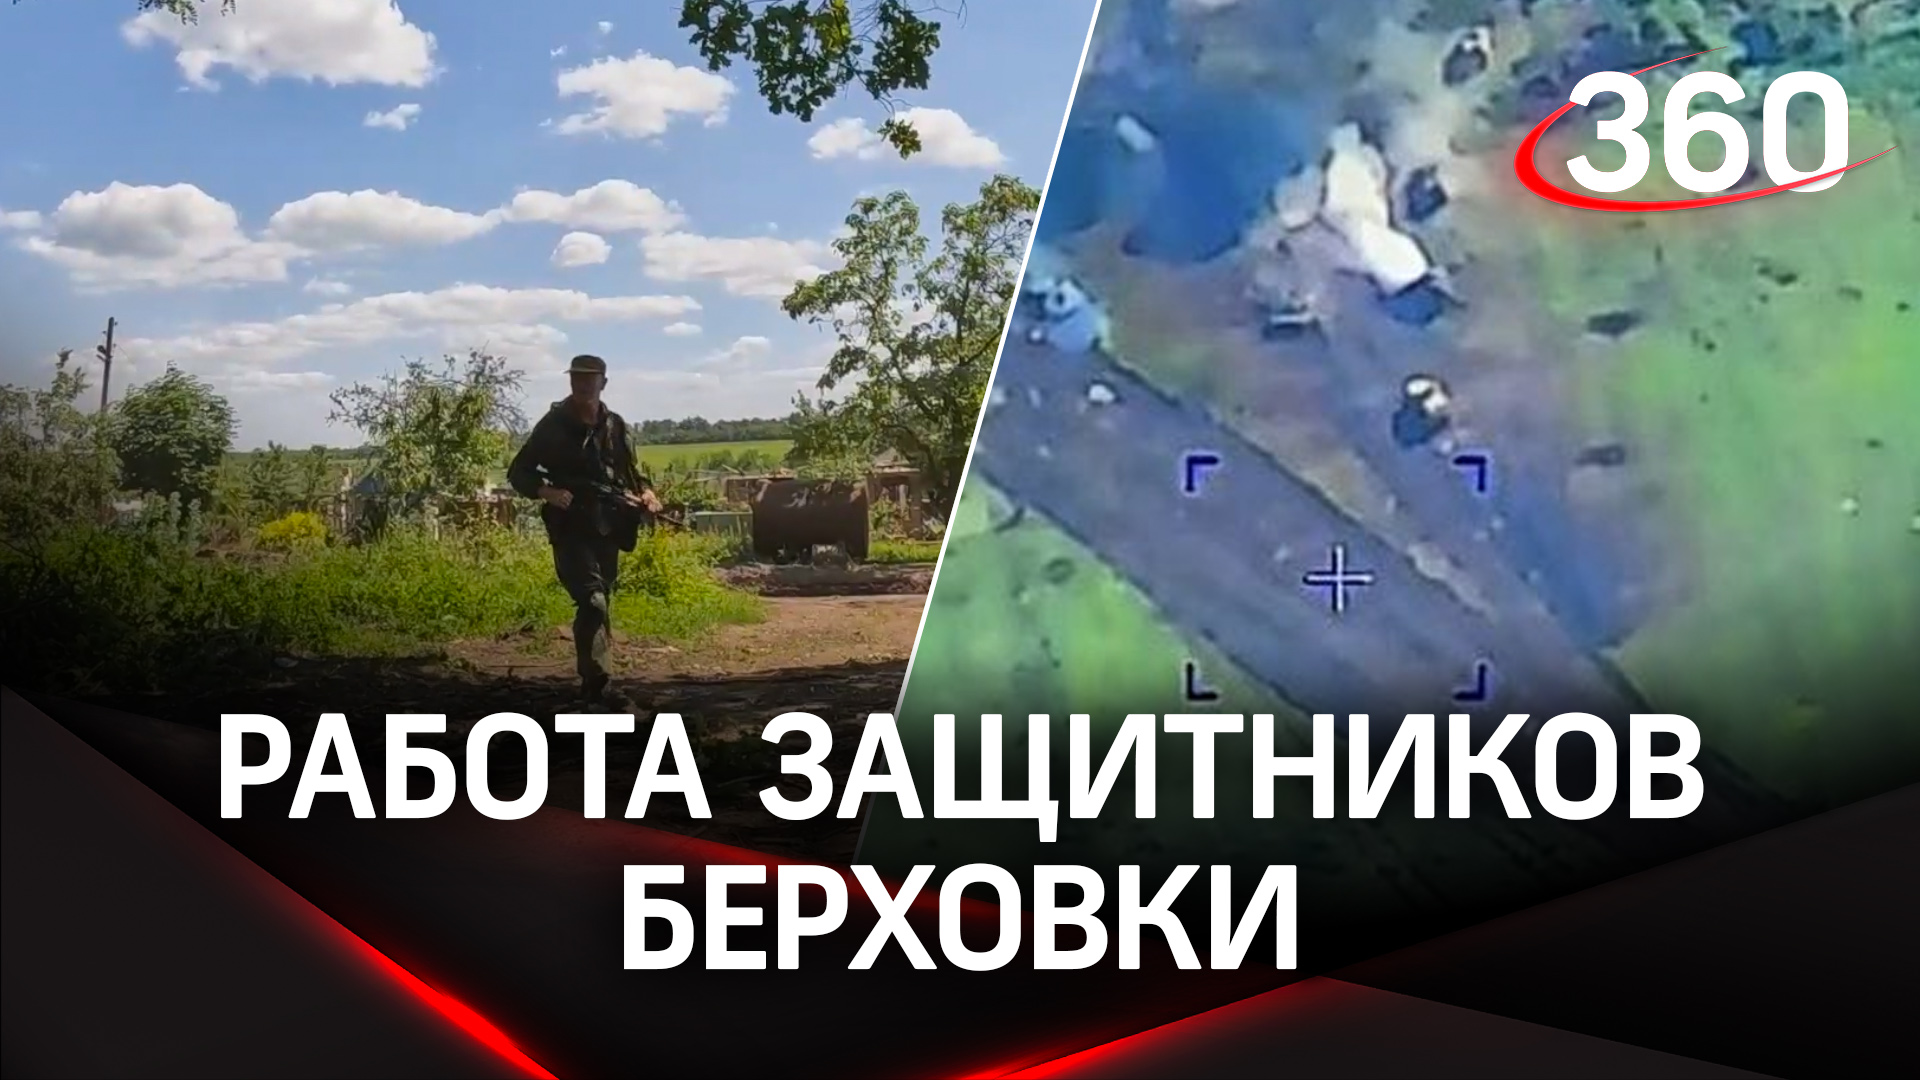 Видео работы защитников Берховки и уничтожения бронетехники ВСУ на подступах